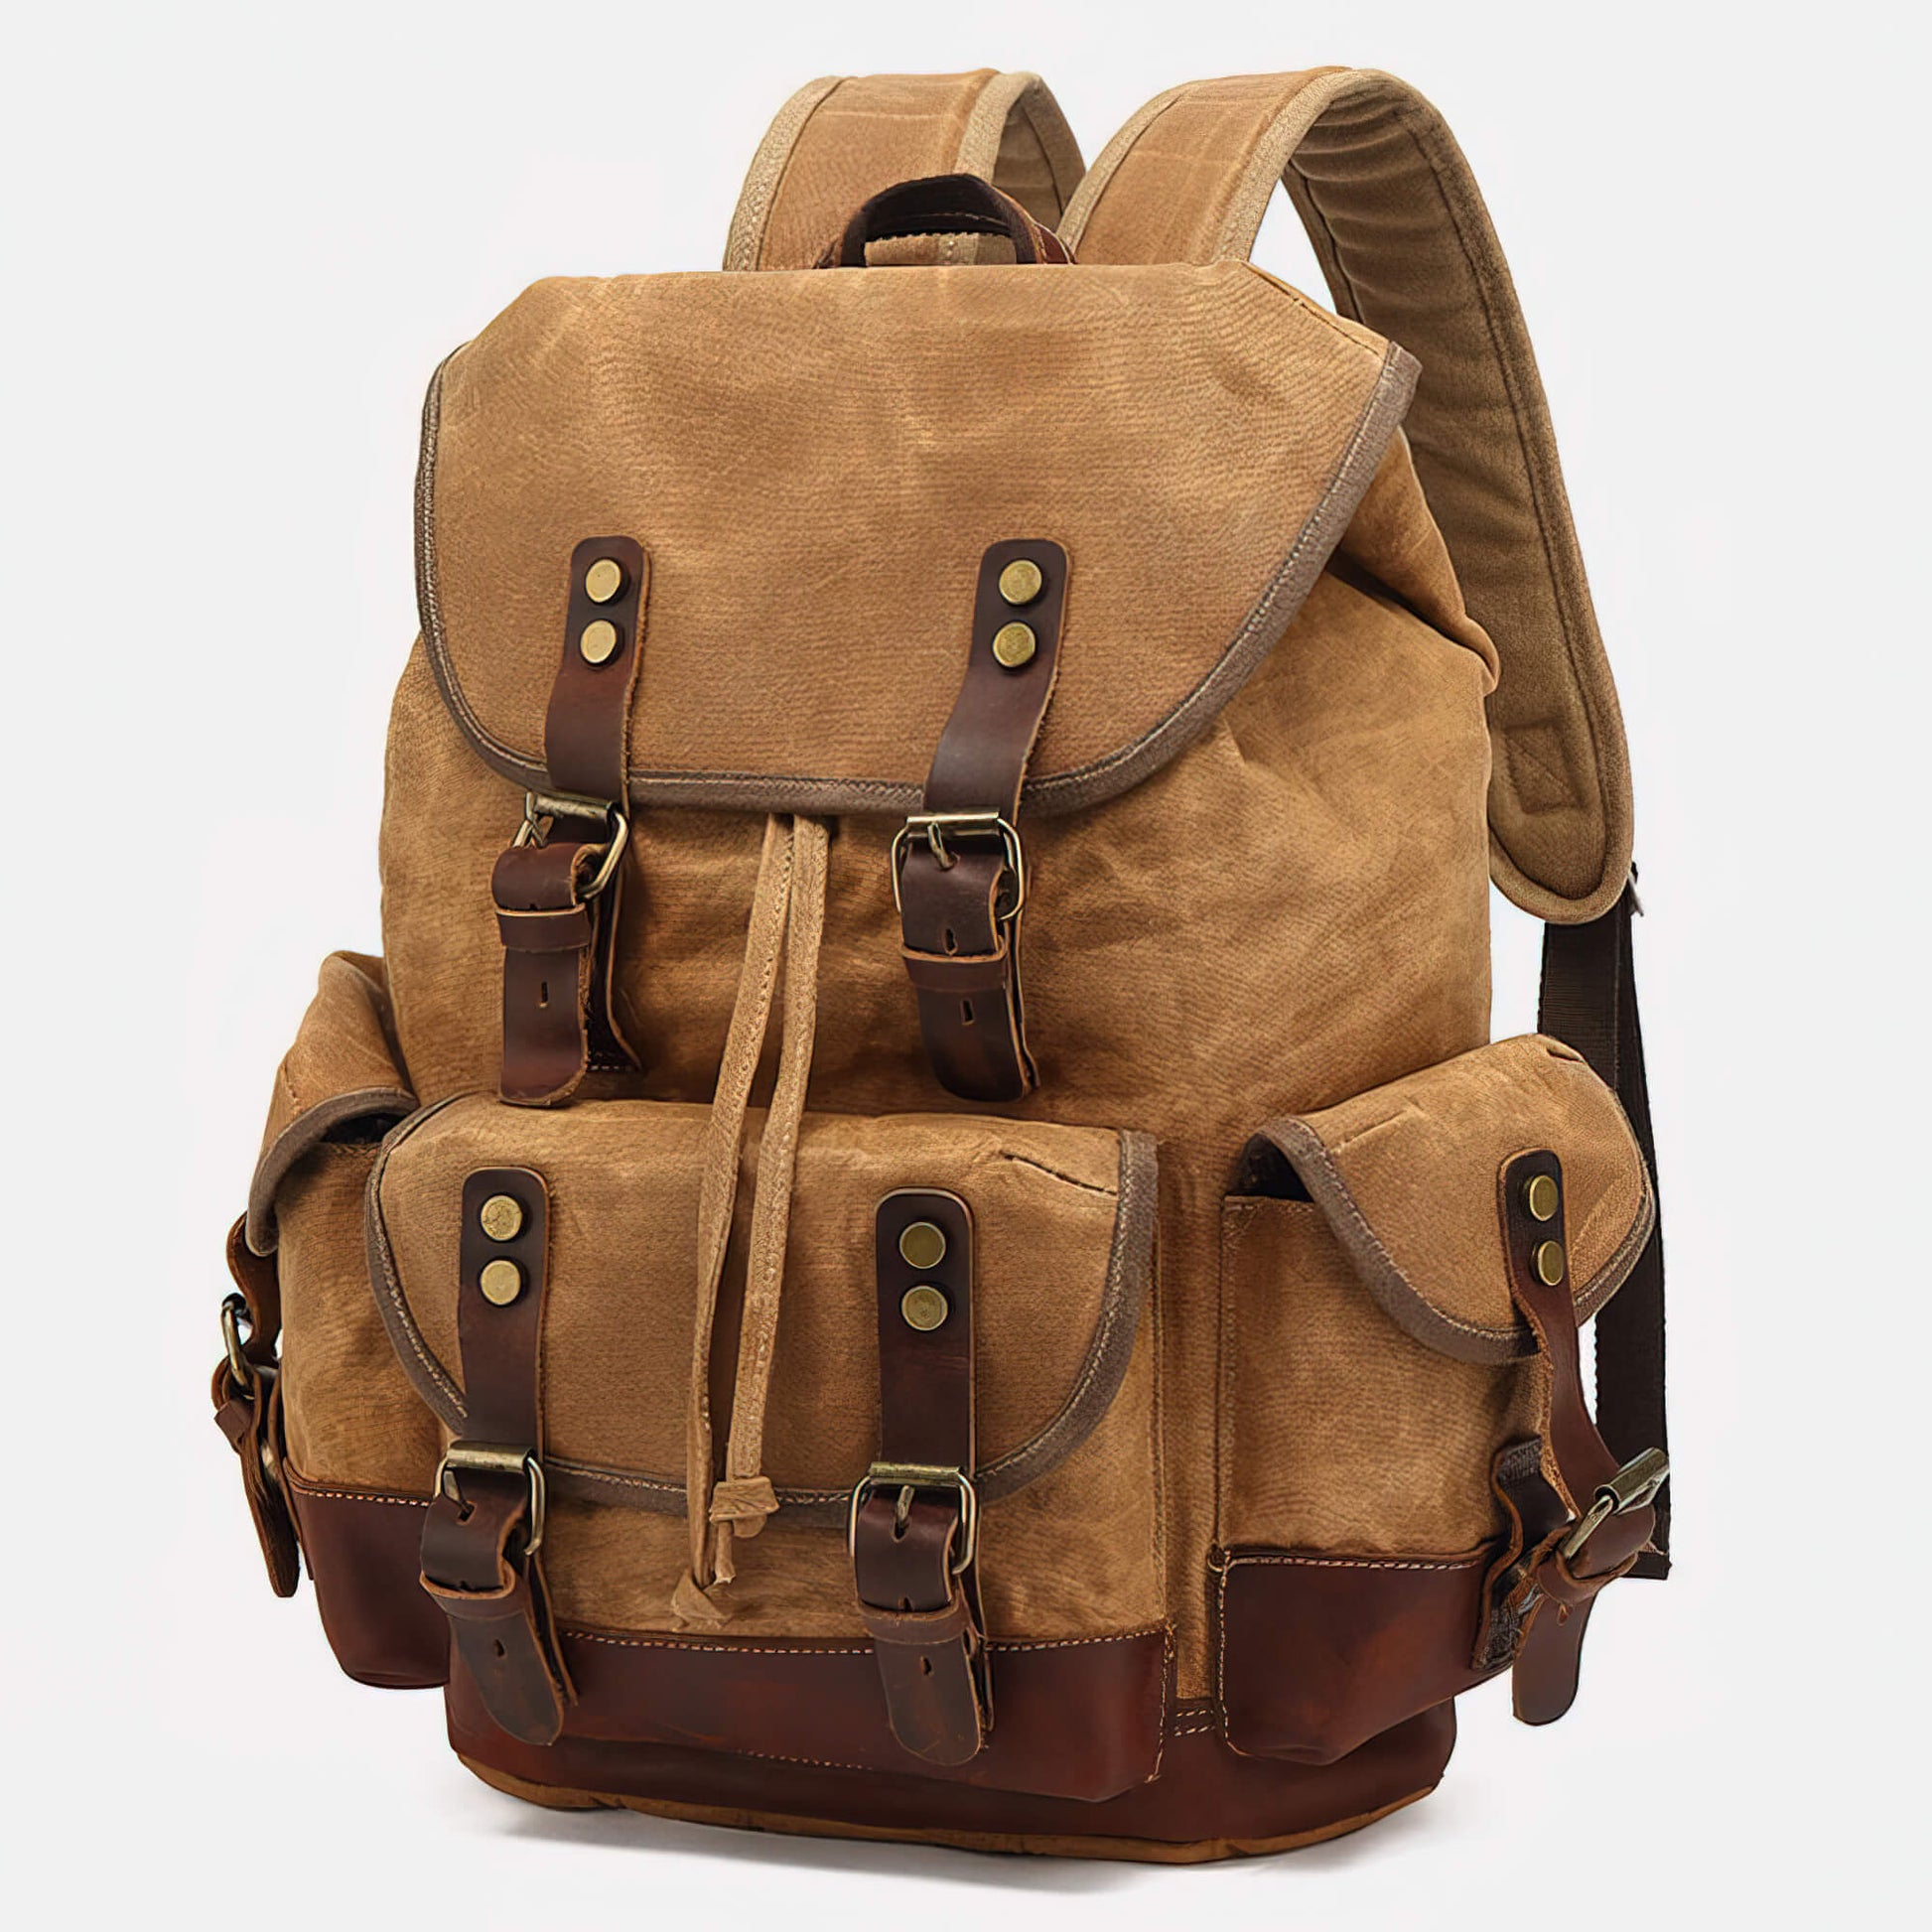 Vintage Large Capacity Backpack, Retro Waterproof Travel Daypack